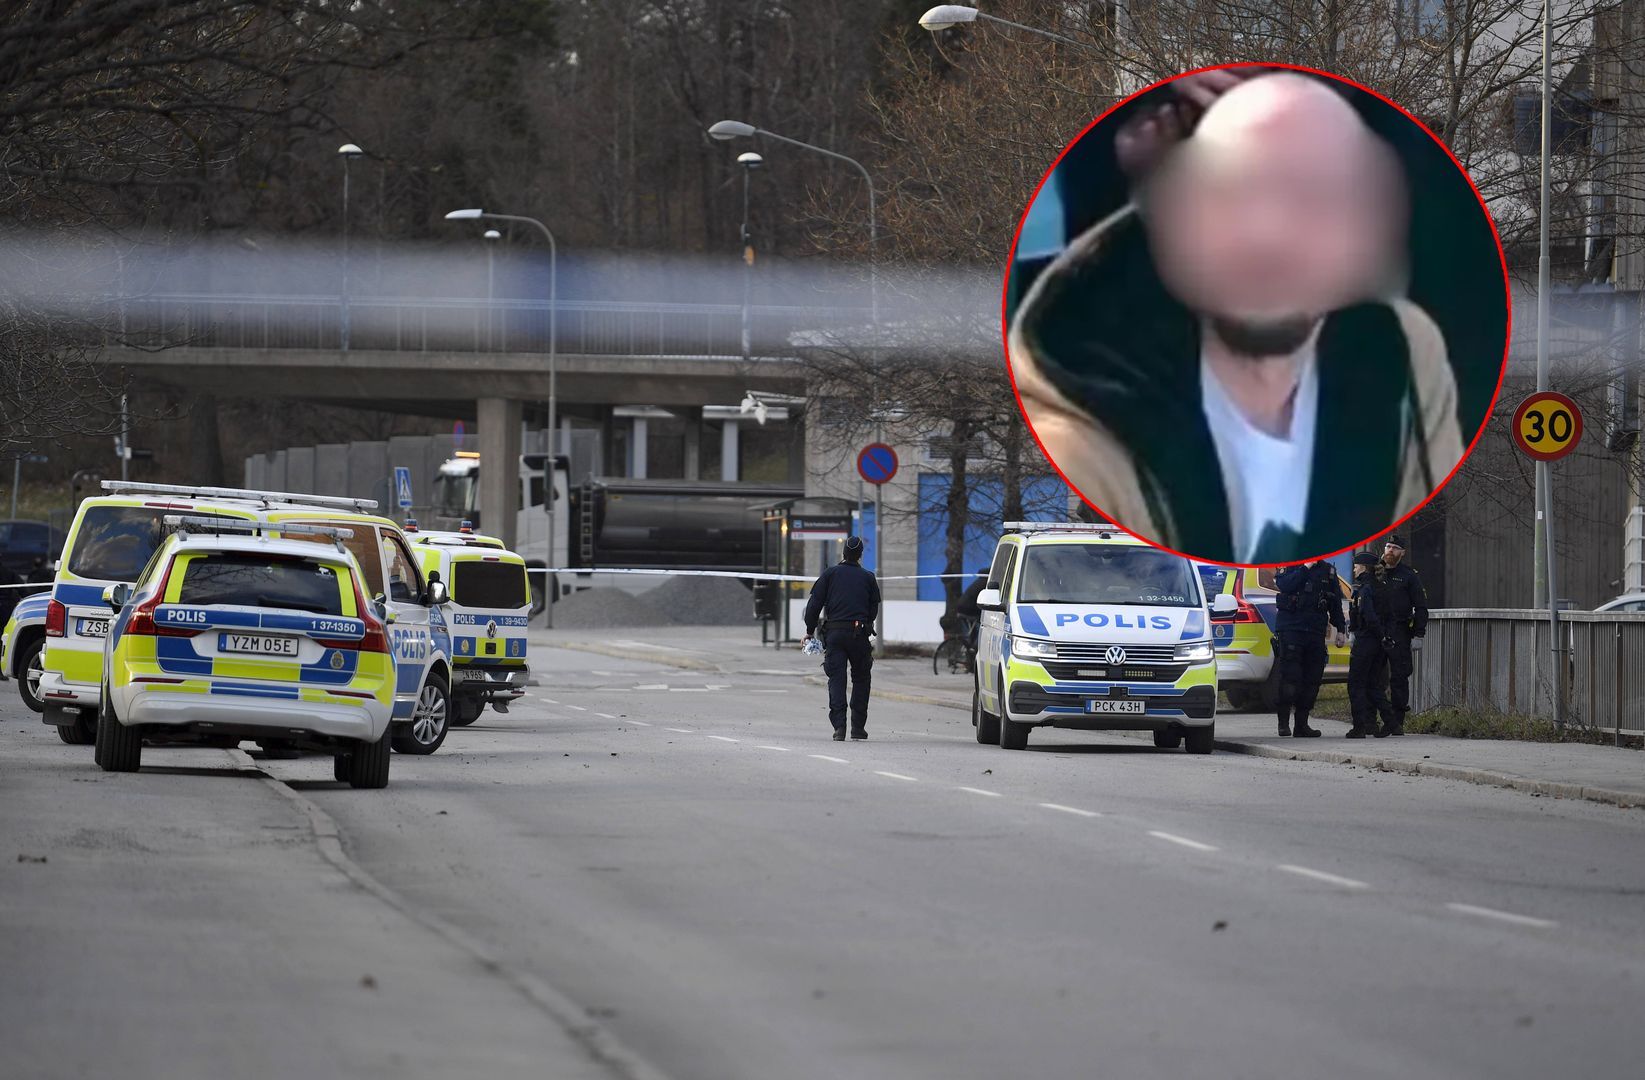 Zabójstwo Polaka w Szwecji. Co dzieje się w tym kraju?